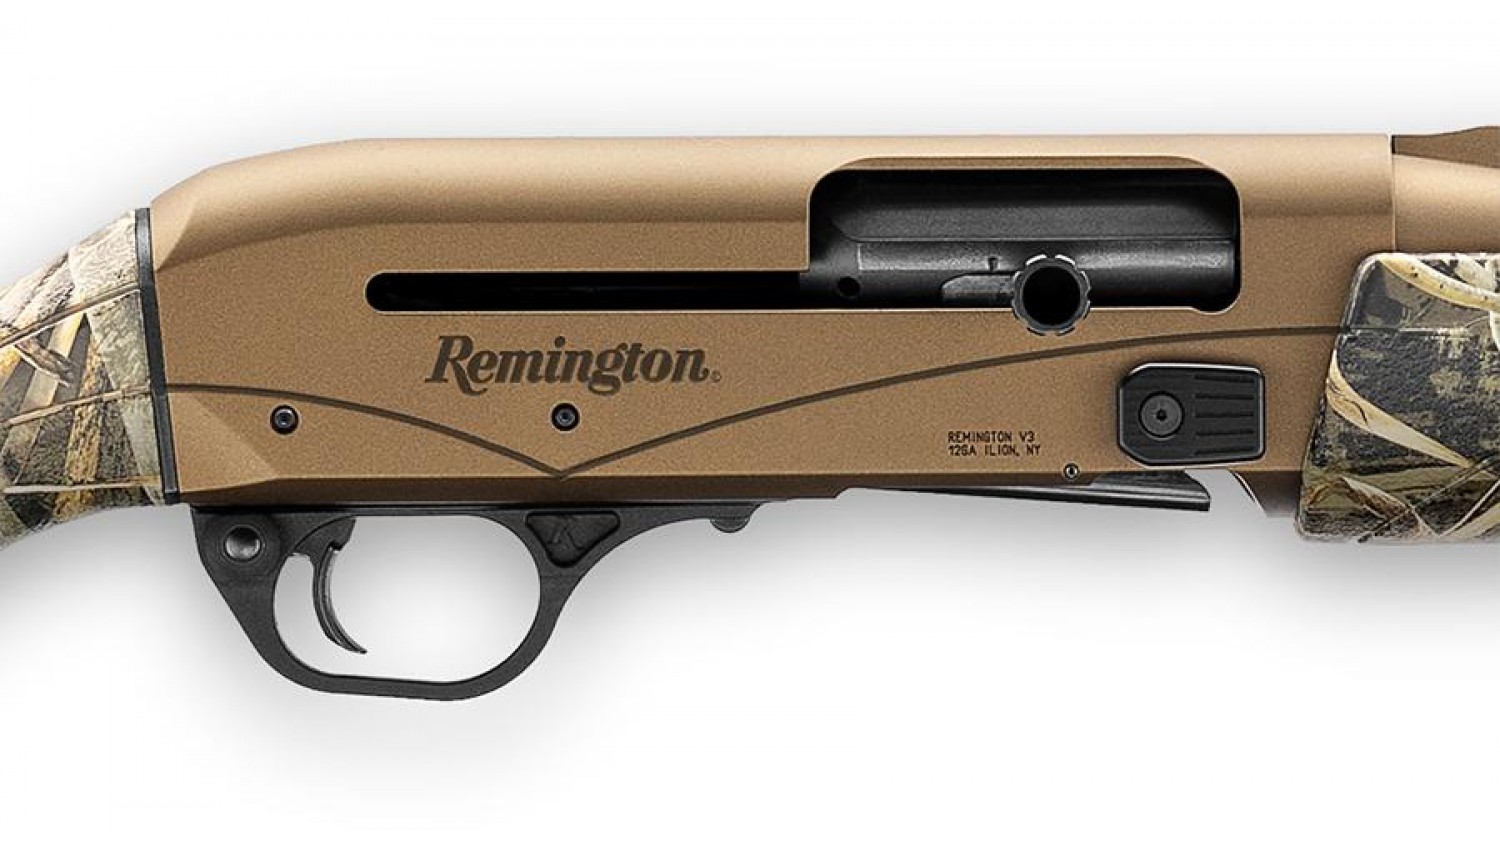 Remington-lott farms